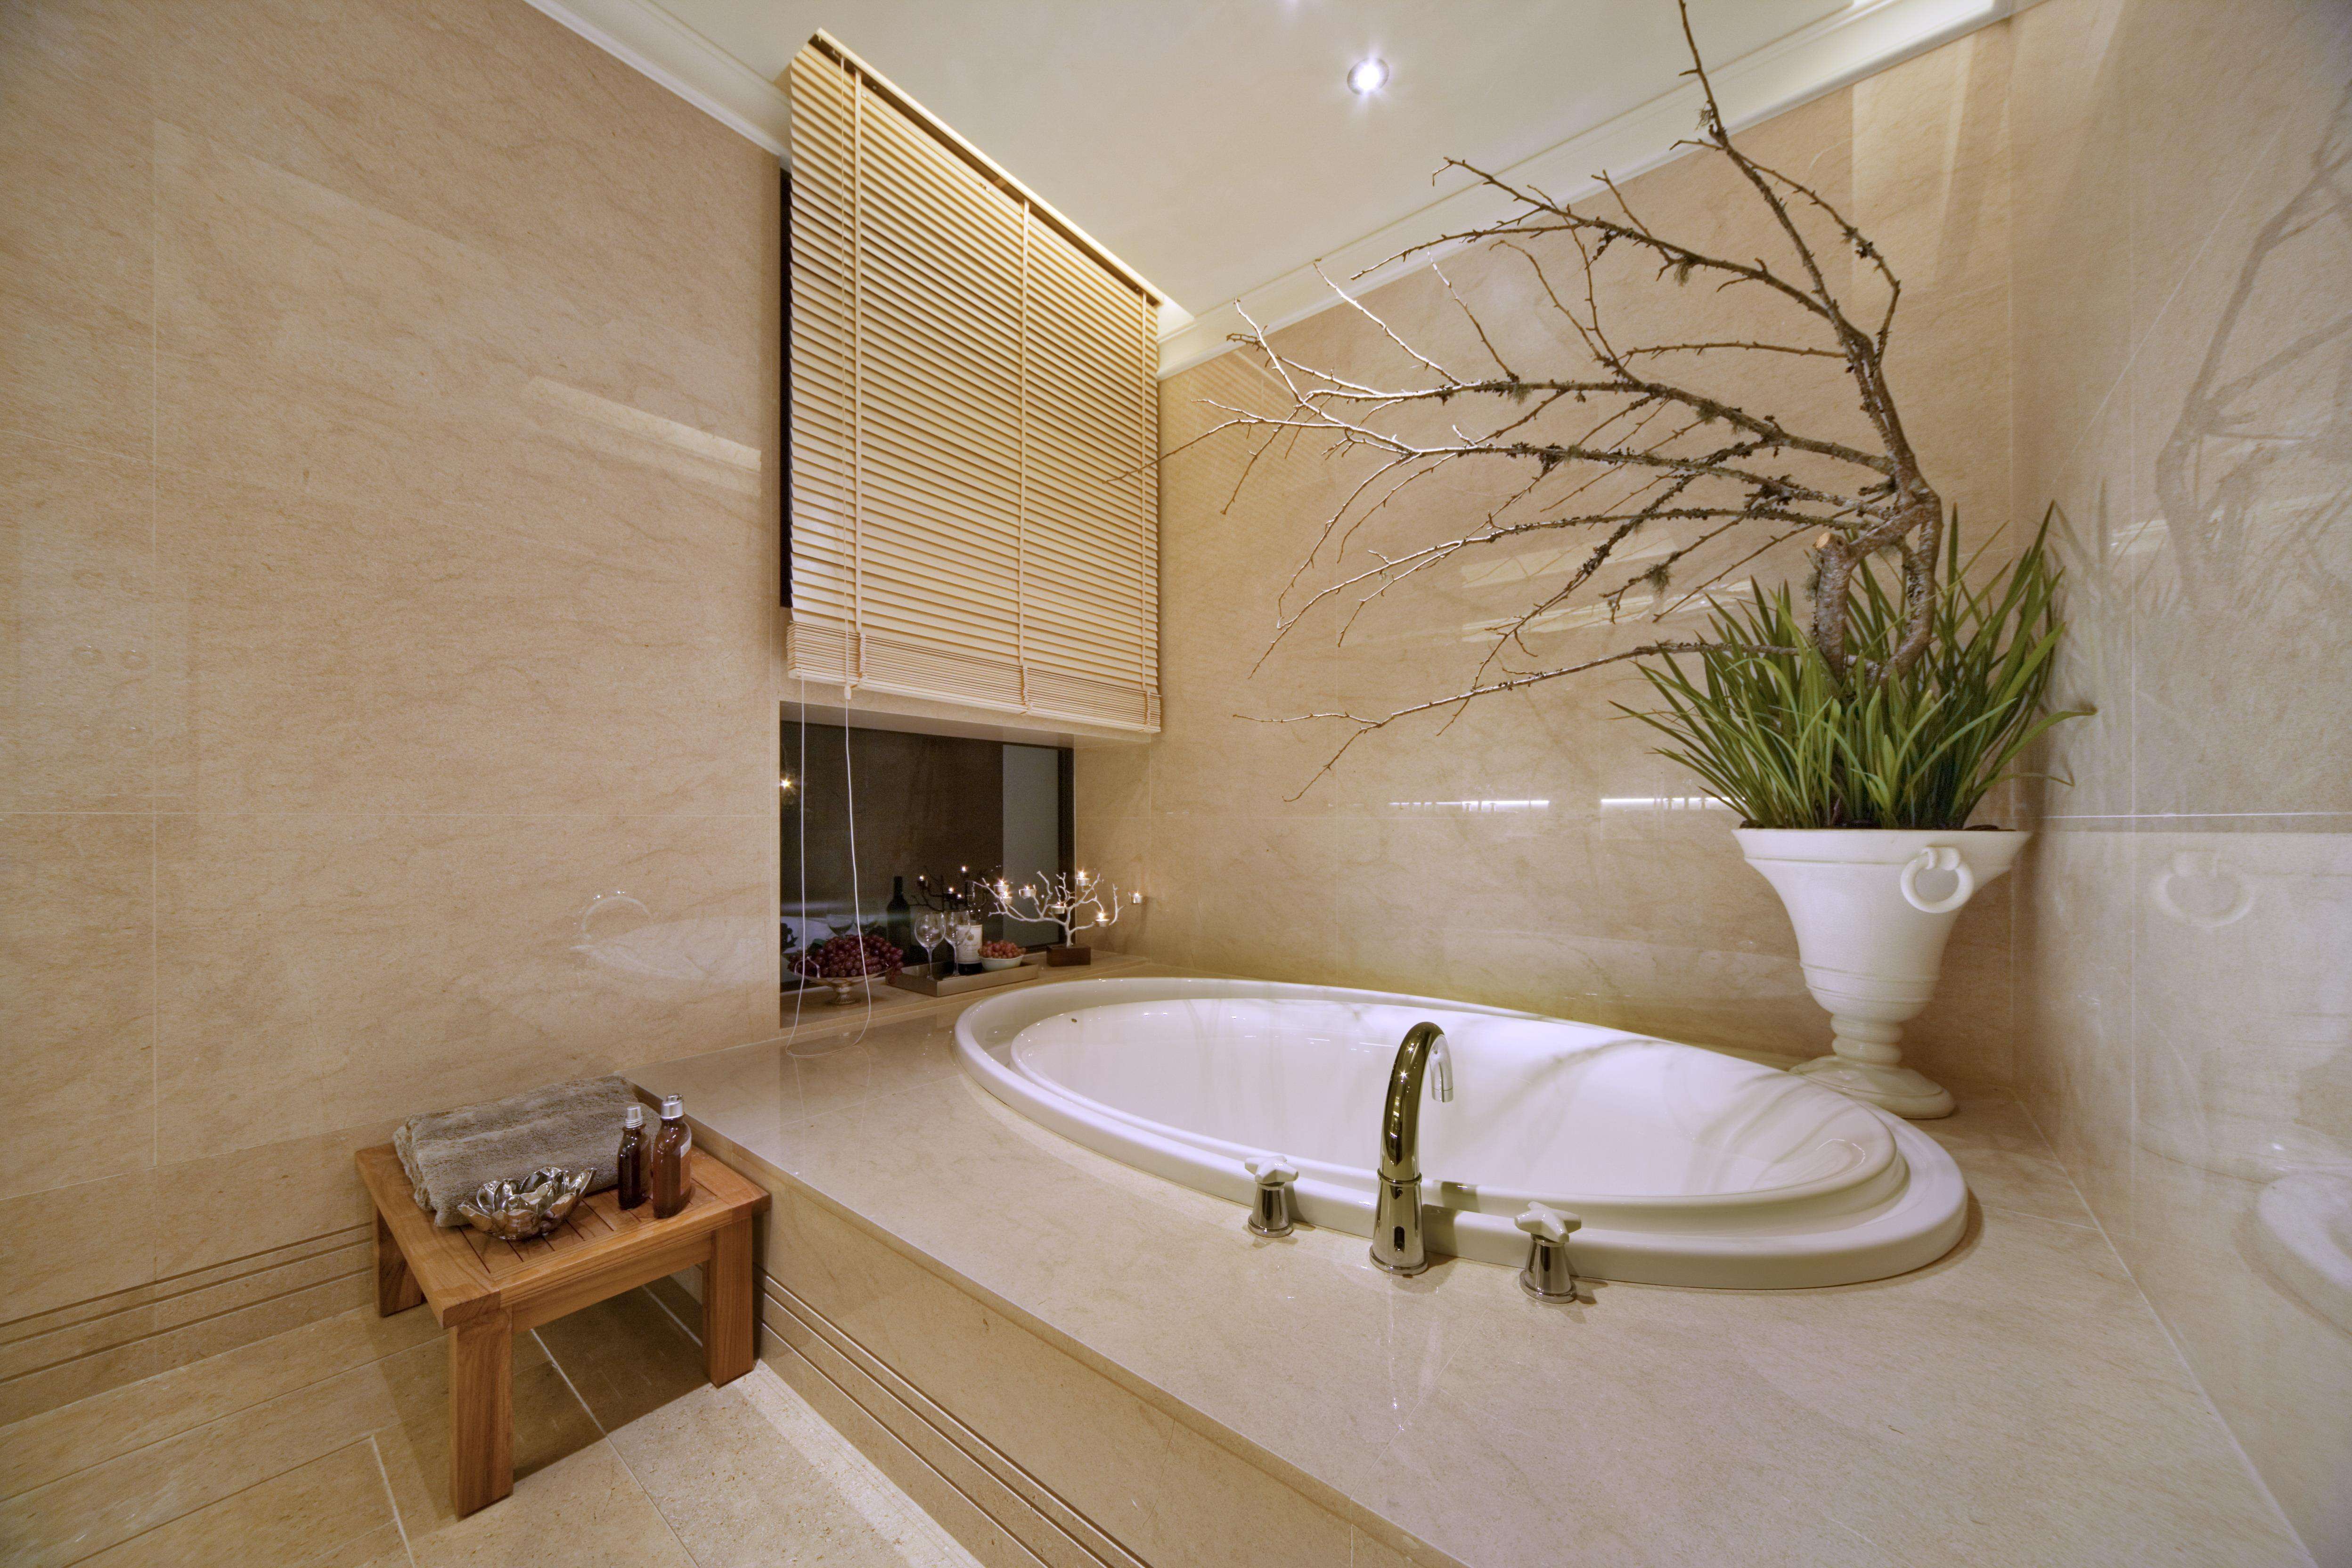 地中海风格别墅卫生间台阶浴缸装修效果图片案例_别墅设计图